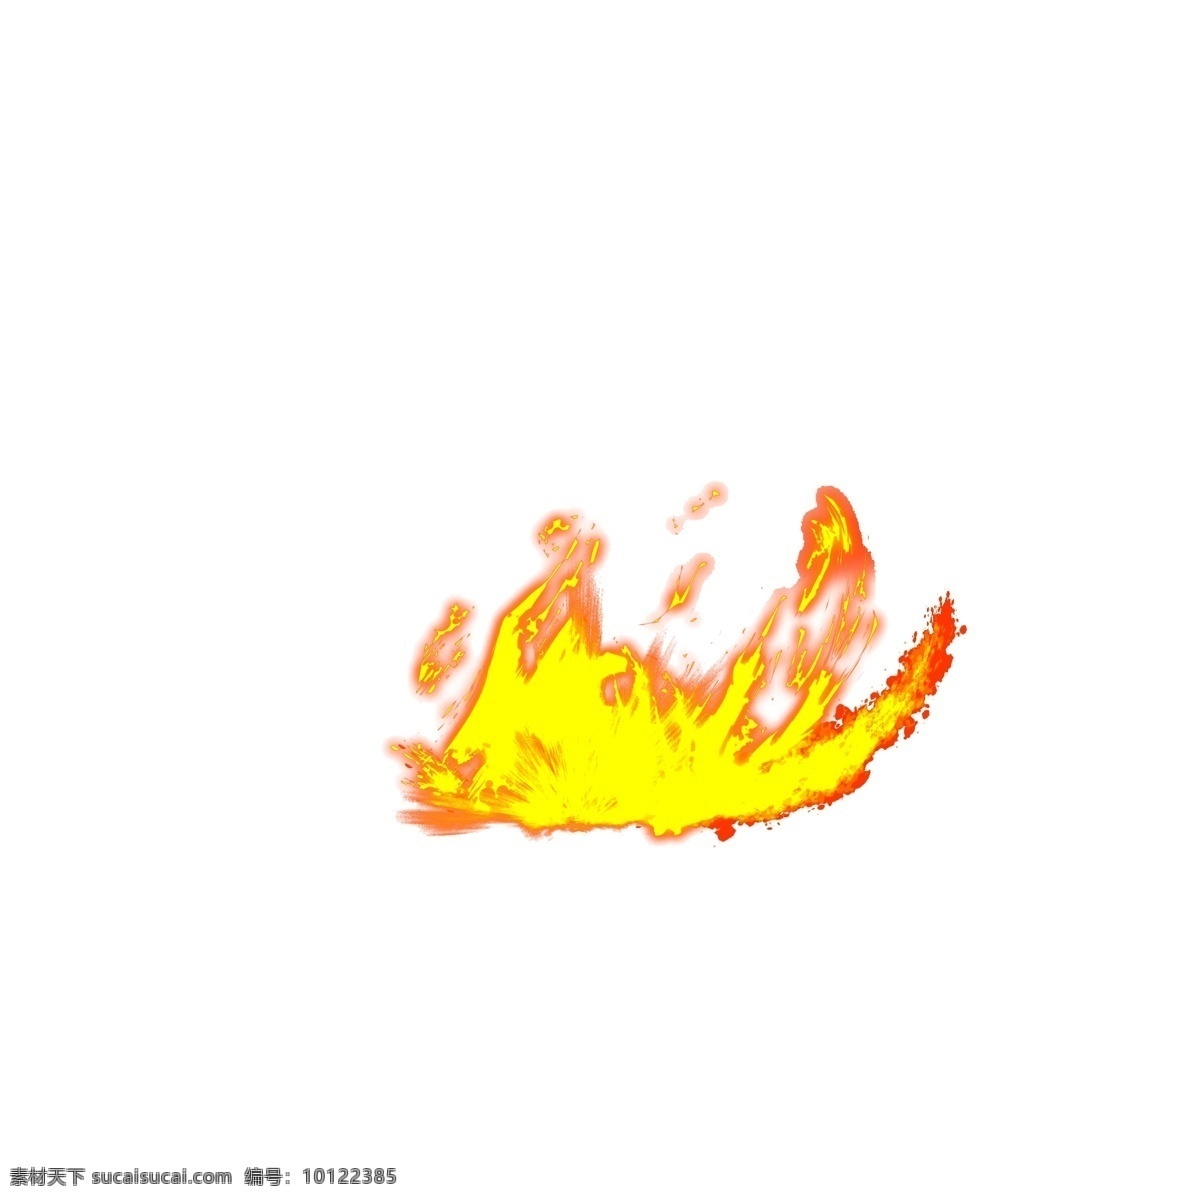 漫画 手绘 火焰 自然 元素 火 火星 仿真实火焰 推荐 深色 背景 下 透明 装饰 ps 特效图 火堆 火花 字